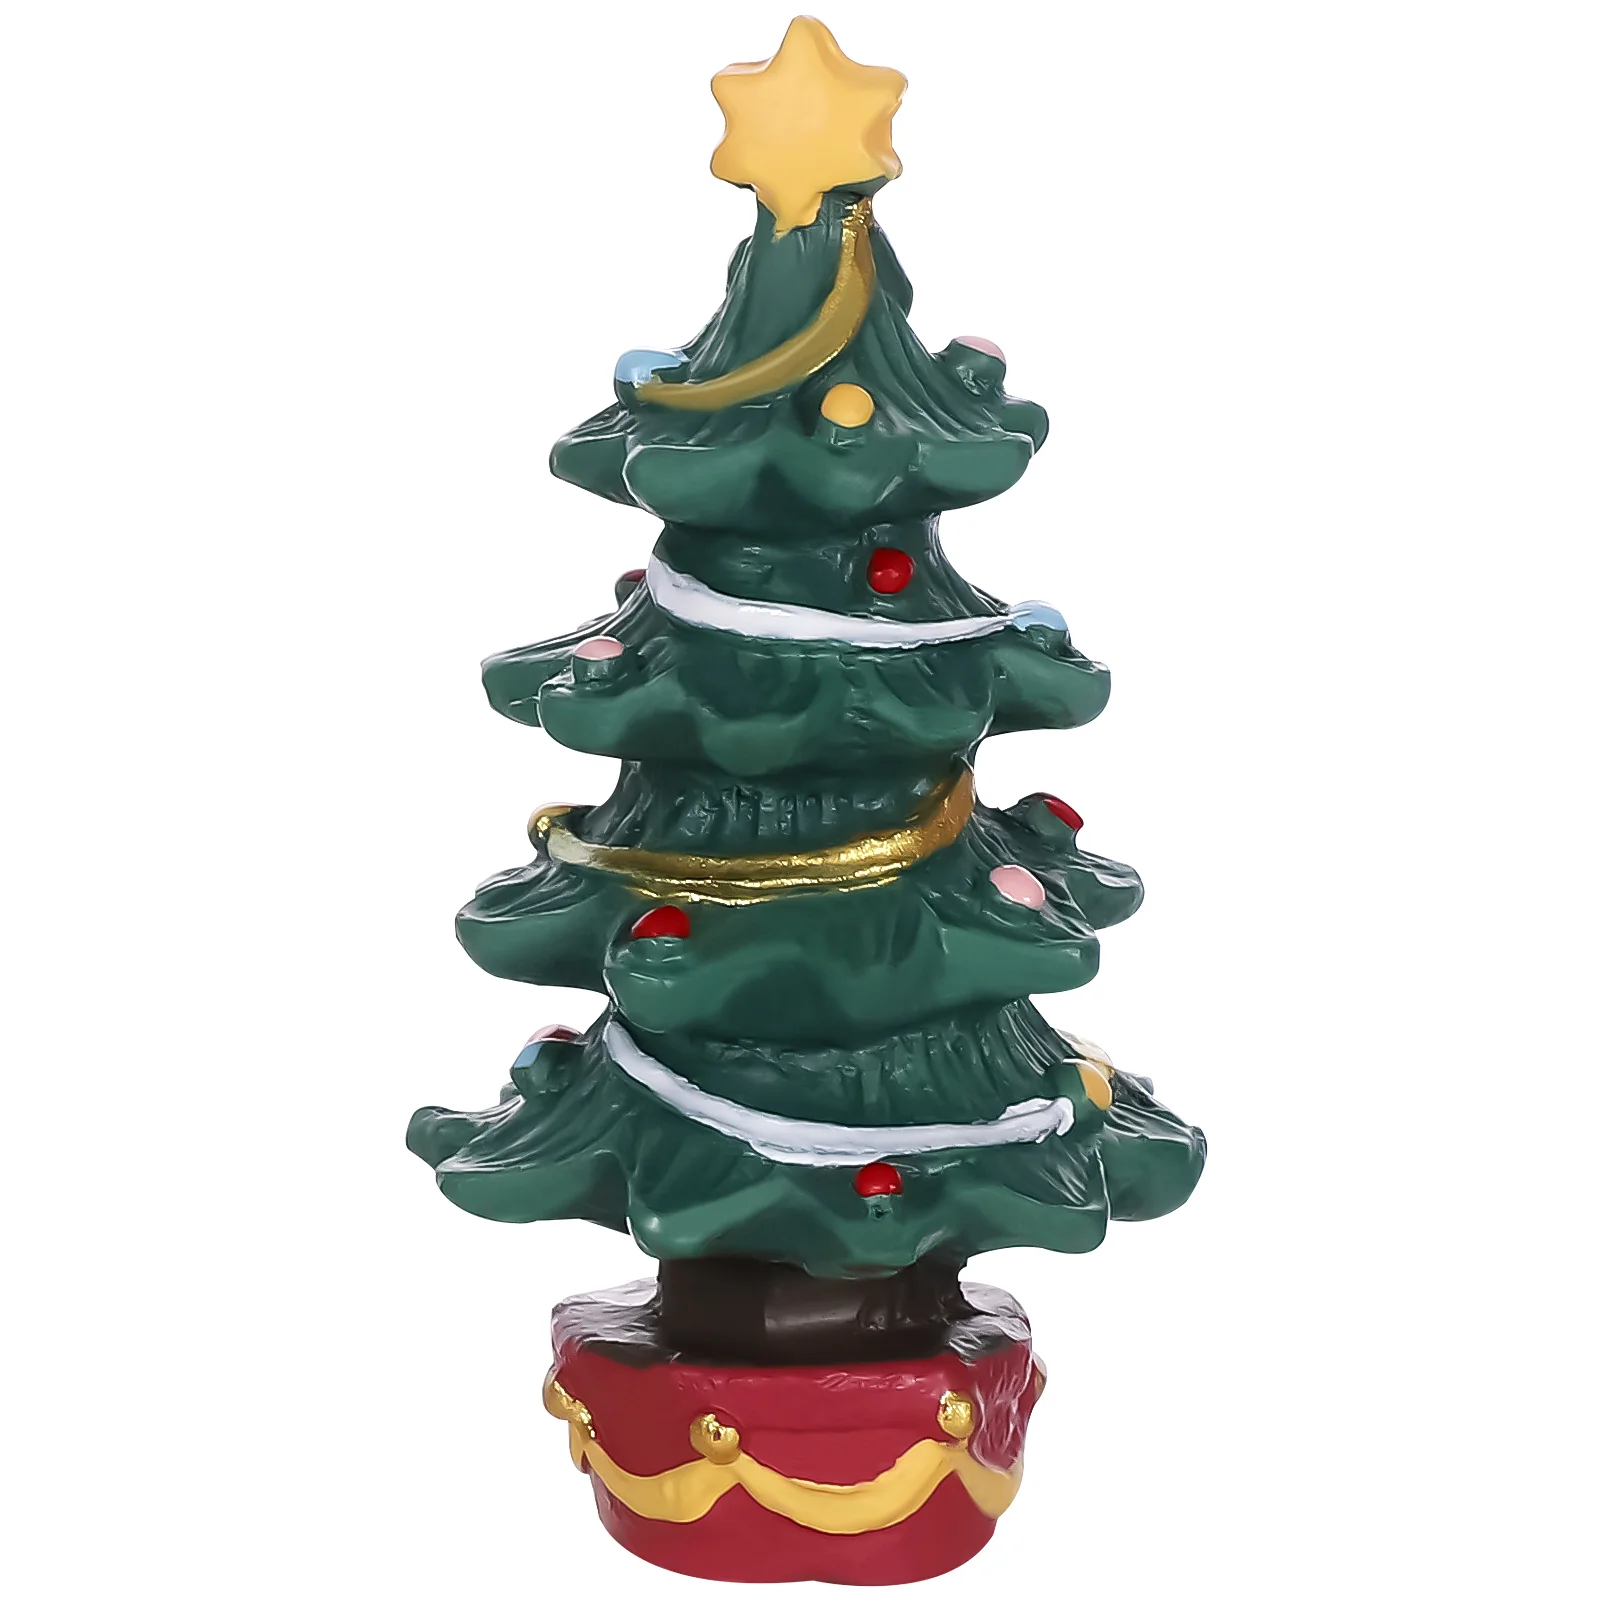 

POPETPOP Рождественская елка из смолы креативная Мини Рождественская елка, Рождественское украшение, настольное миниатюрное украшение